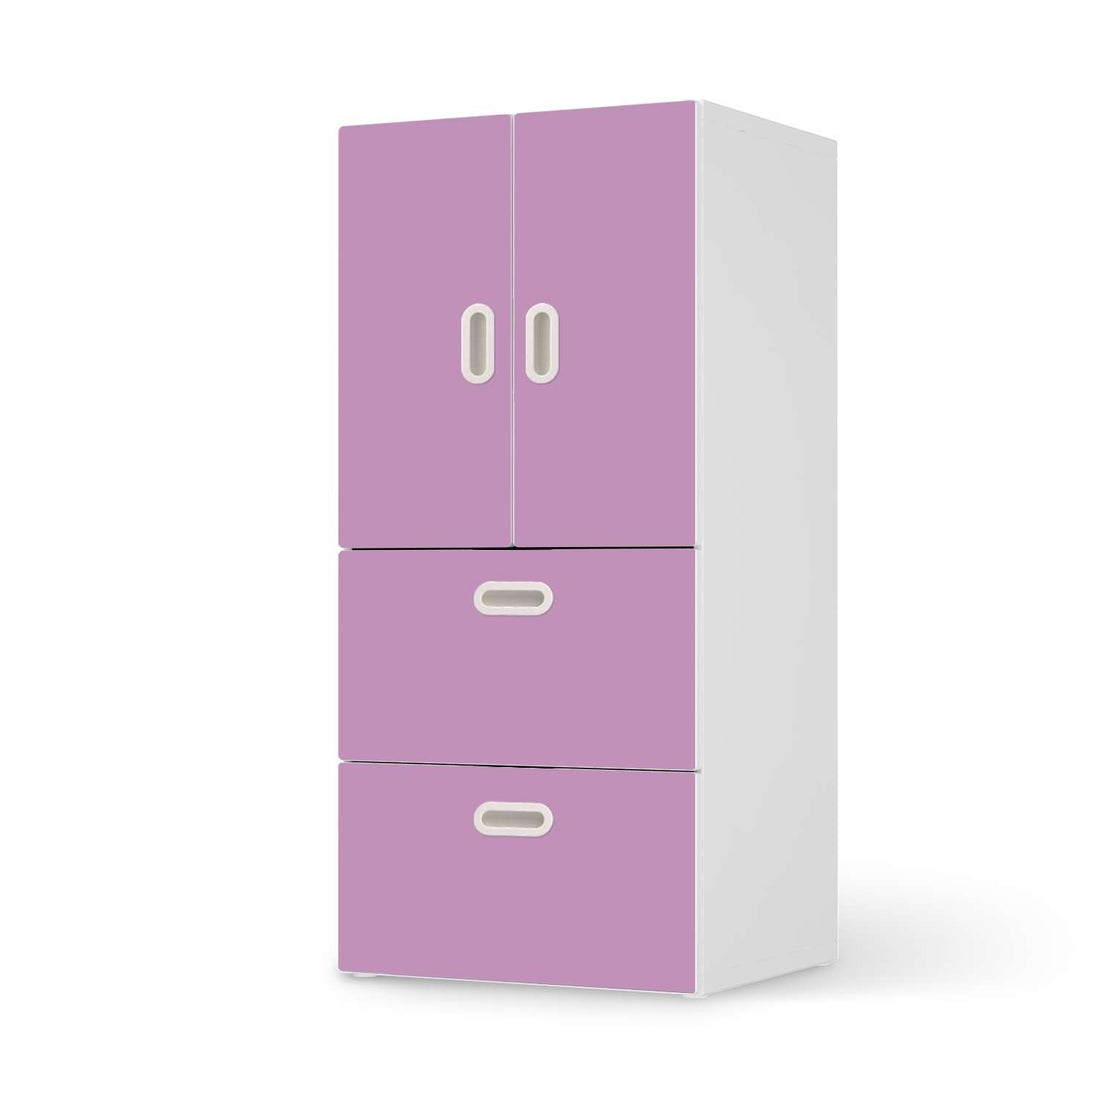 Möbelfolie Flieder Light - IKEA Stuva / Fritids kombiniert - 2 Schubladen und 2 kleine Türen  - weiss